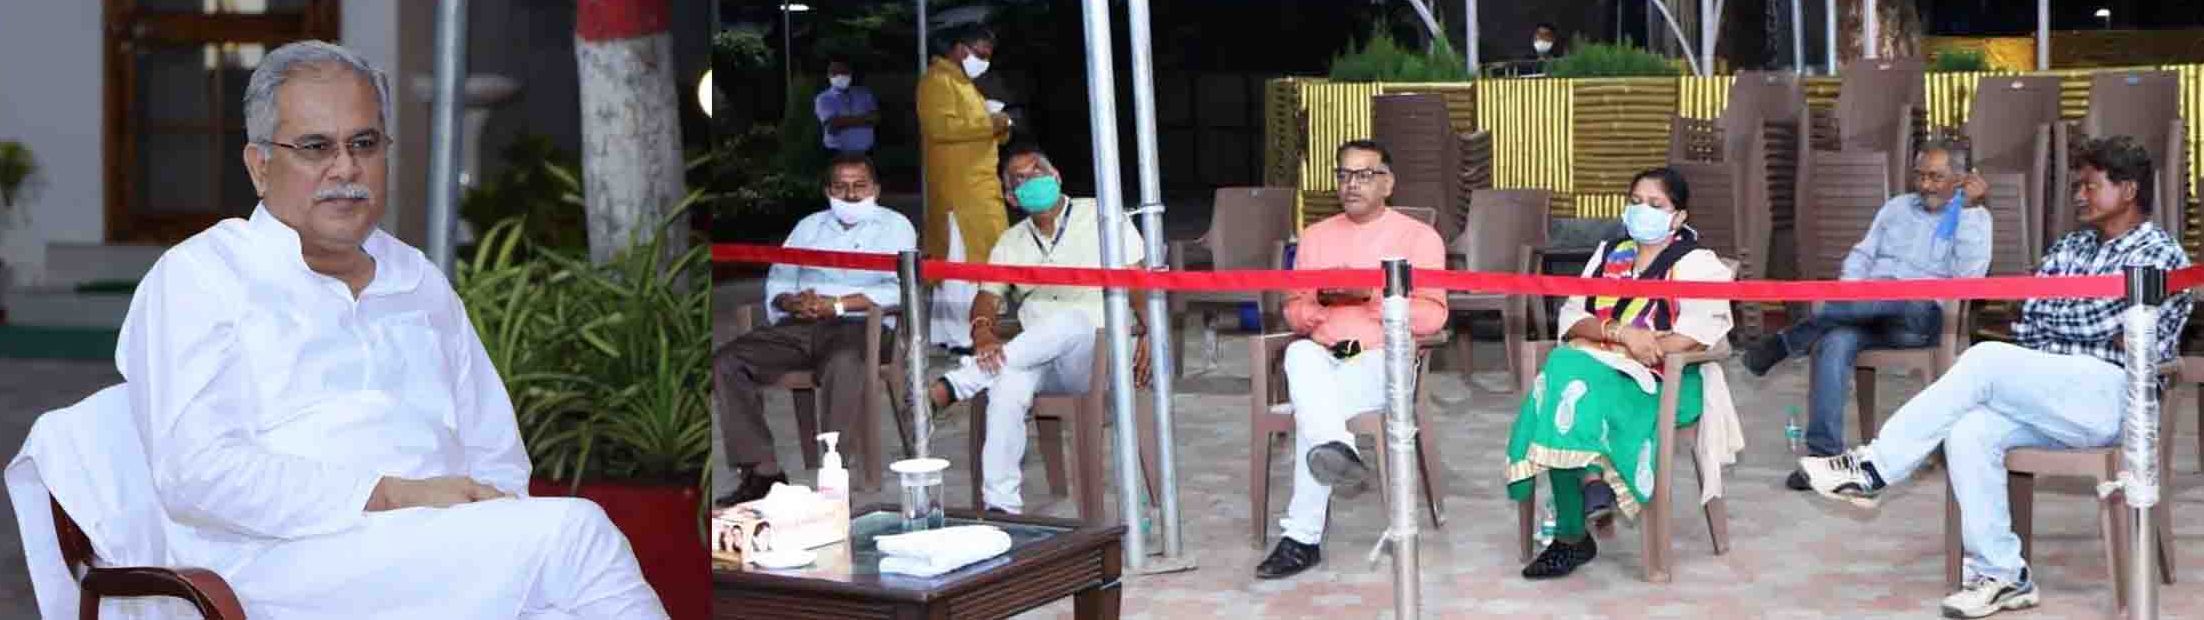 कांकेर घटना की जांच करेगी पत्रकारों की उच्च स्तरीय समिति,  प्रेस क्लब रायपुर की मांग पर मुख्यमंत्री श्री भूपेश बघेल ने दिए निर्देश